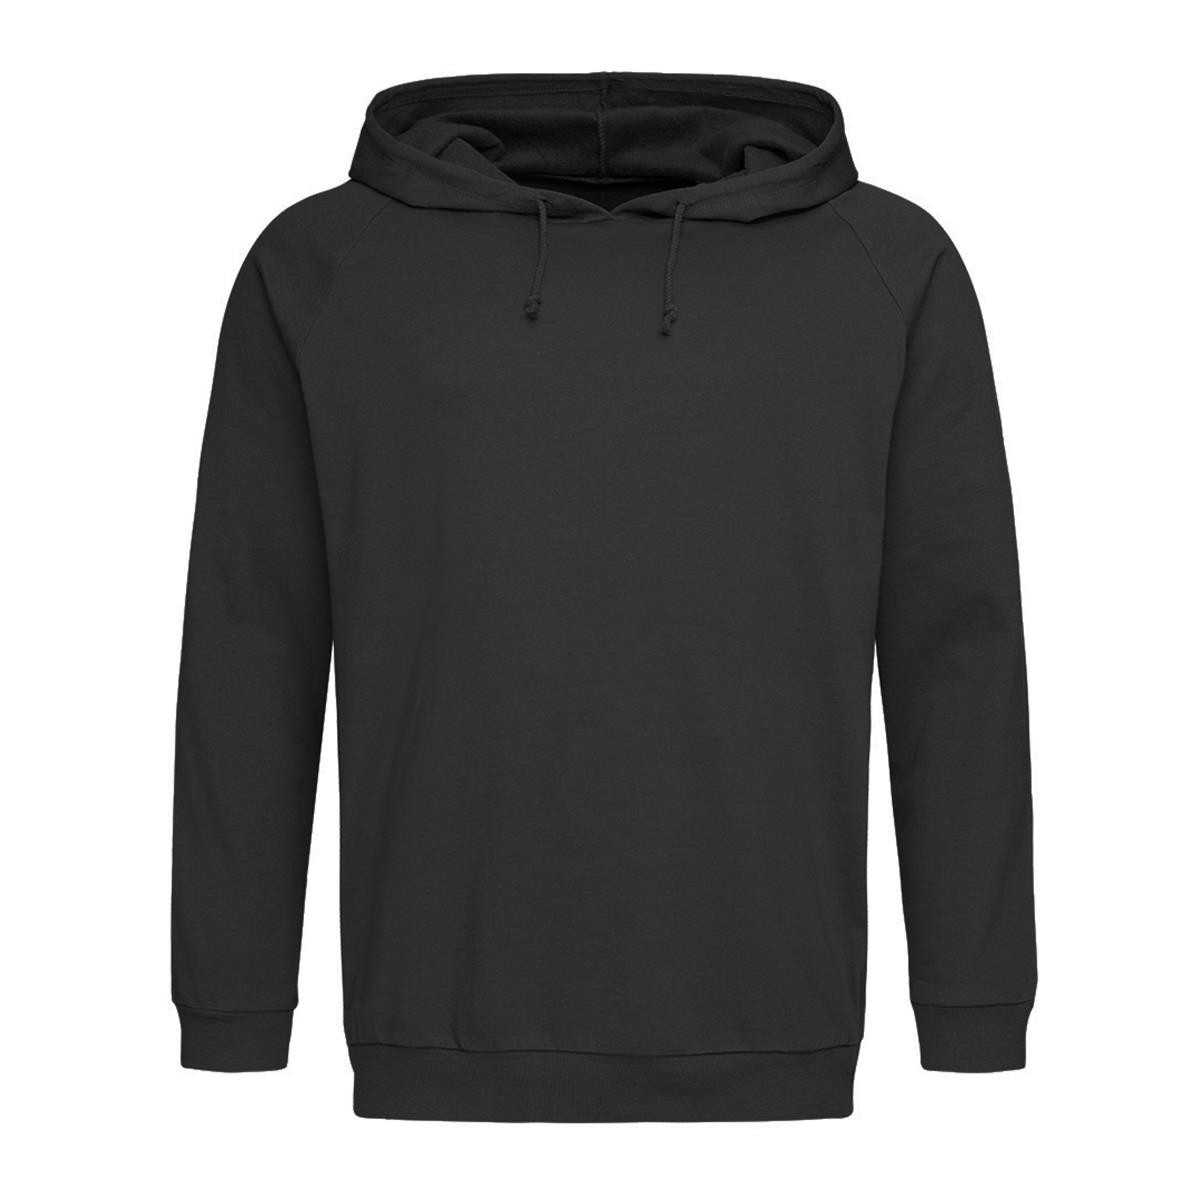 Unisex Hooded Sweatshirt - Global CMA